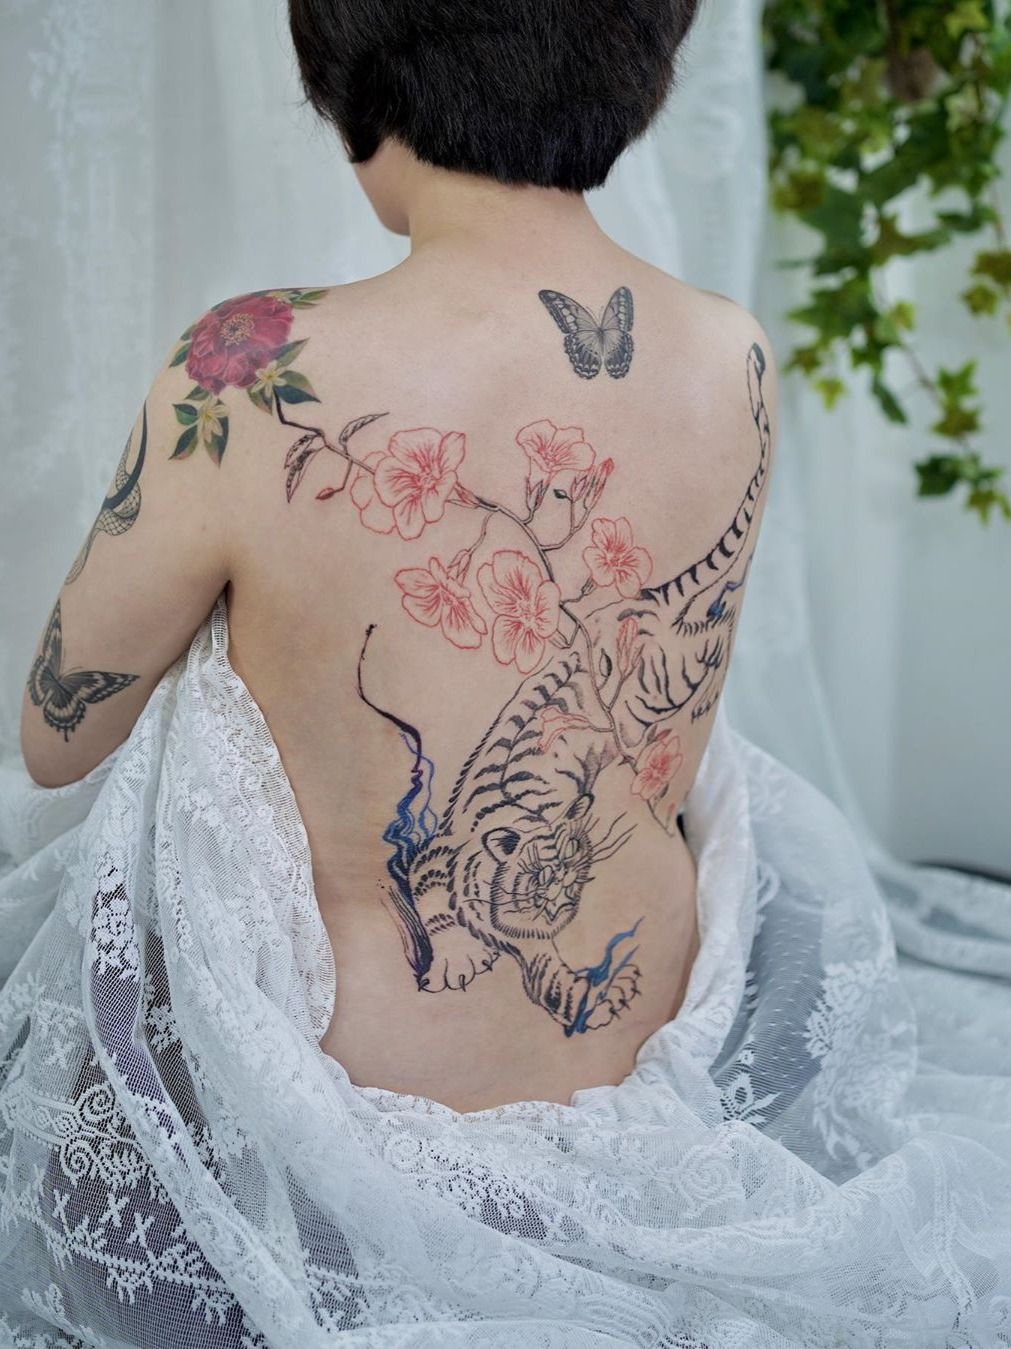 Amazing Virgin Mary back tattoo by Vadim Hodakivsky @vadim_hodakivsky !  @inkedmag @worldofartists @inksav @gq @ink | Instagram